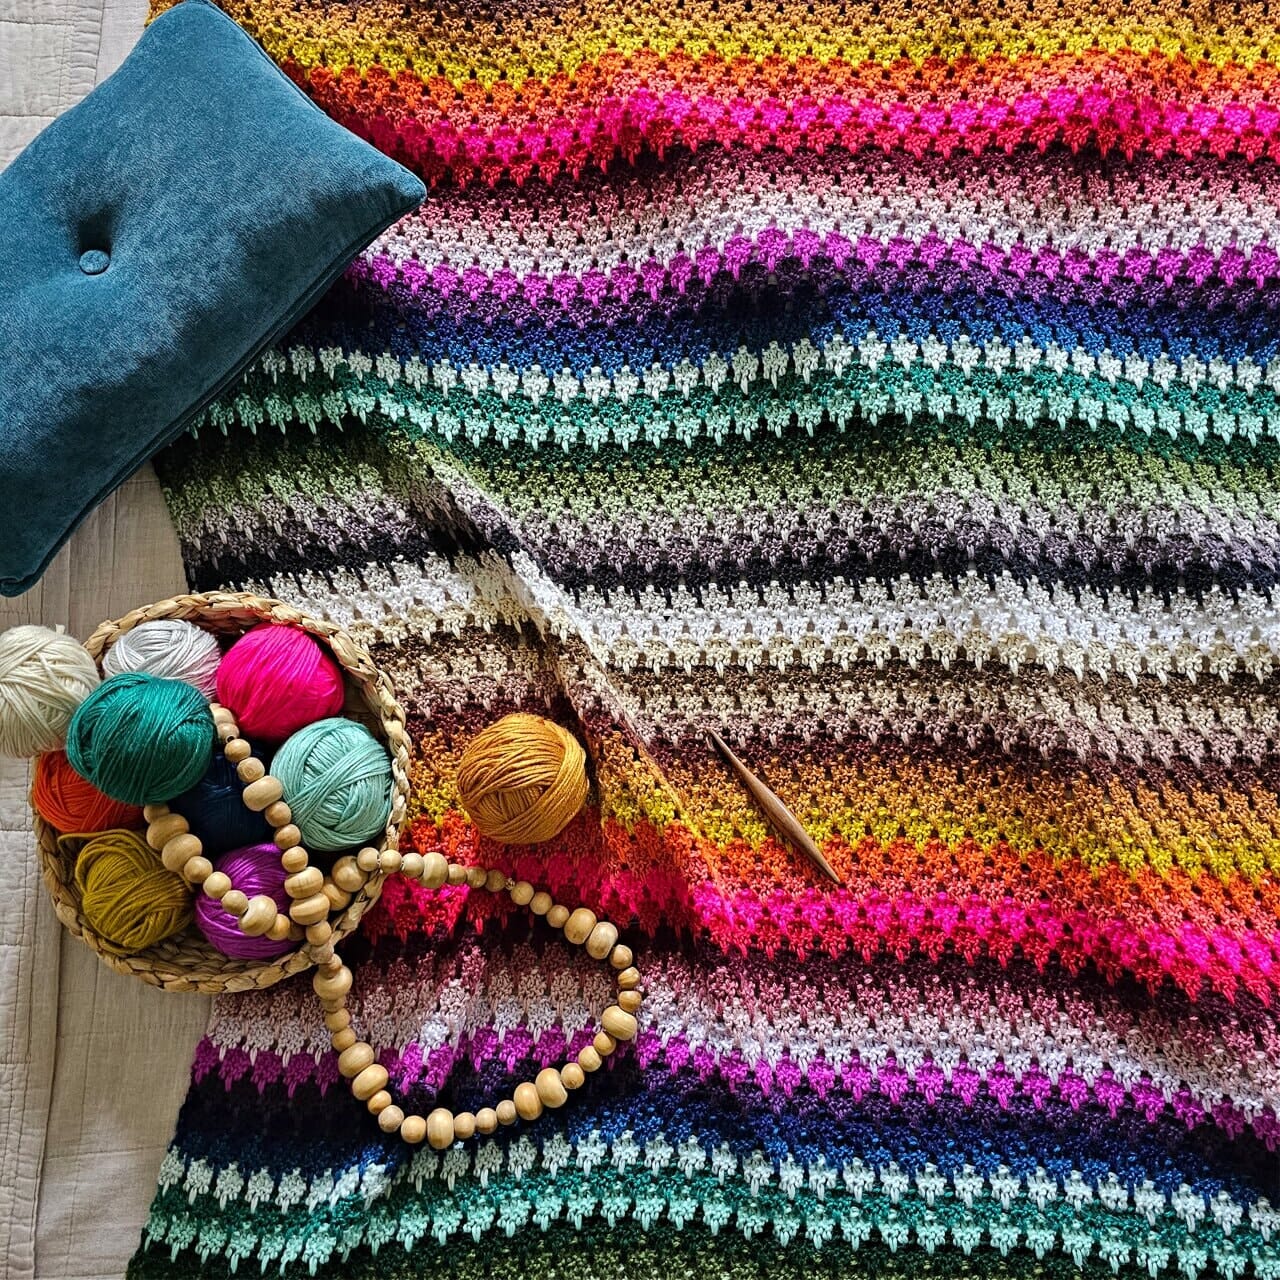 Introducing the very first Furls Fiberarts Crochet-A-Long – FurlsCrochet